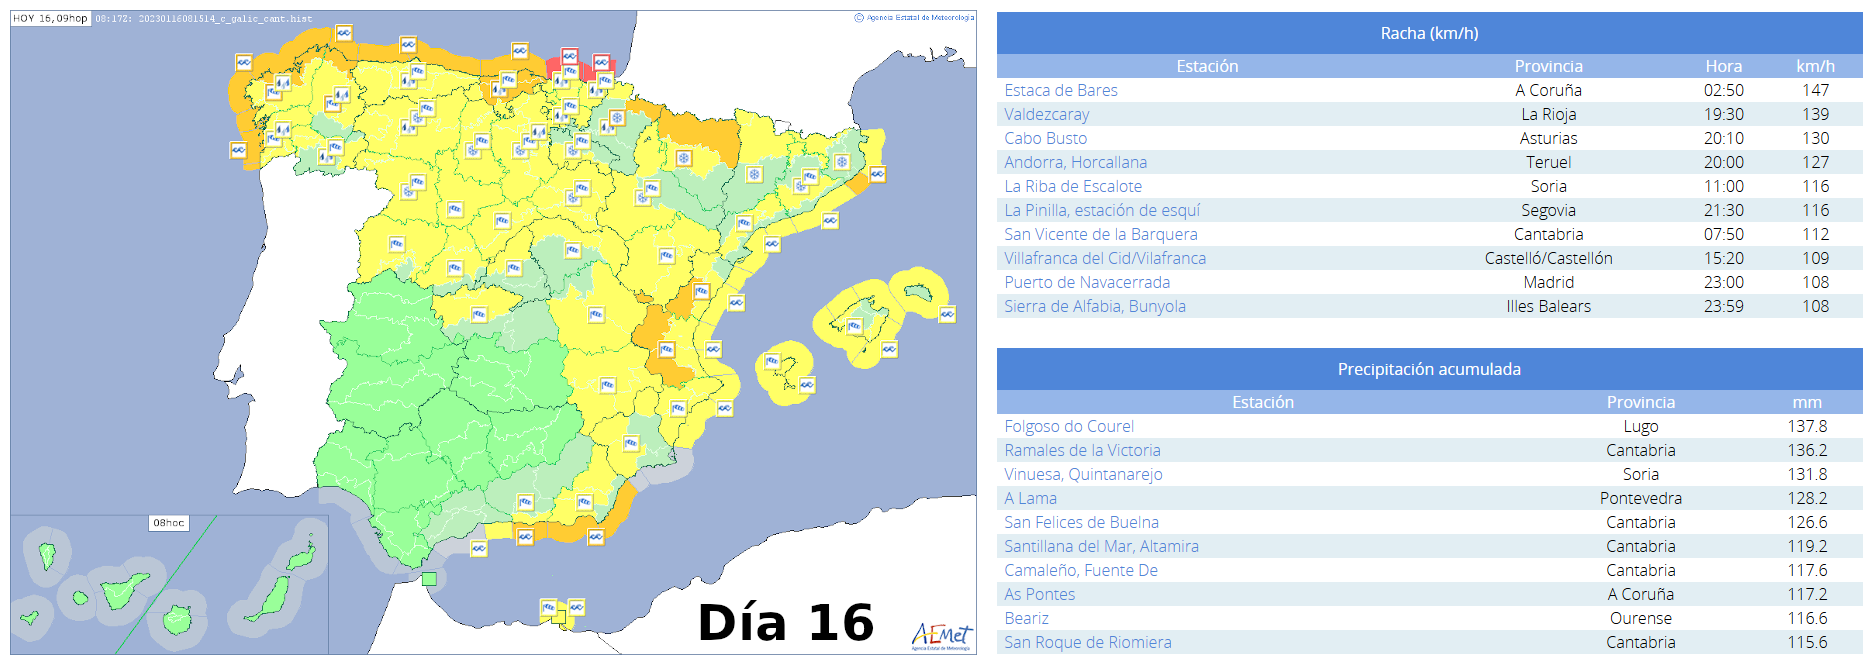 Avisos emitidos para el territorio peninsular y Baleares, así como los principales registros de rachas maximas y precipitaciones acumuladas en 24 horas en estaciones de AEMET a lo largo del día 16 de enero.